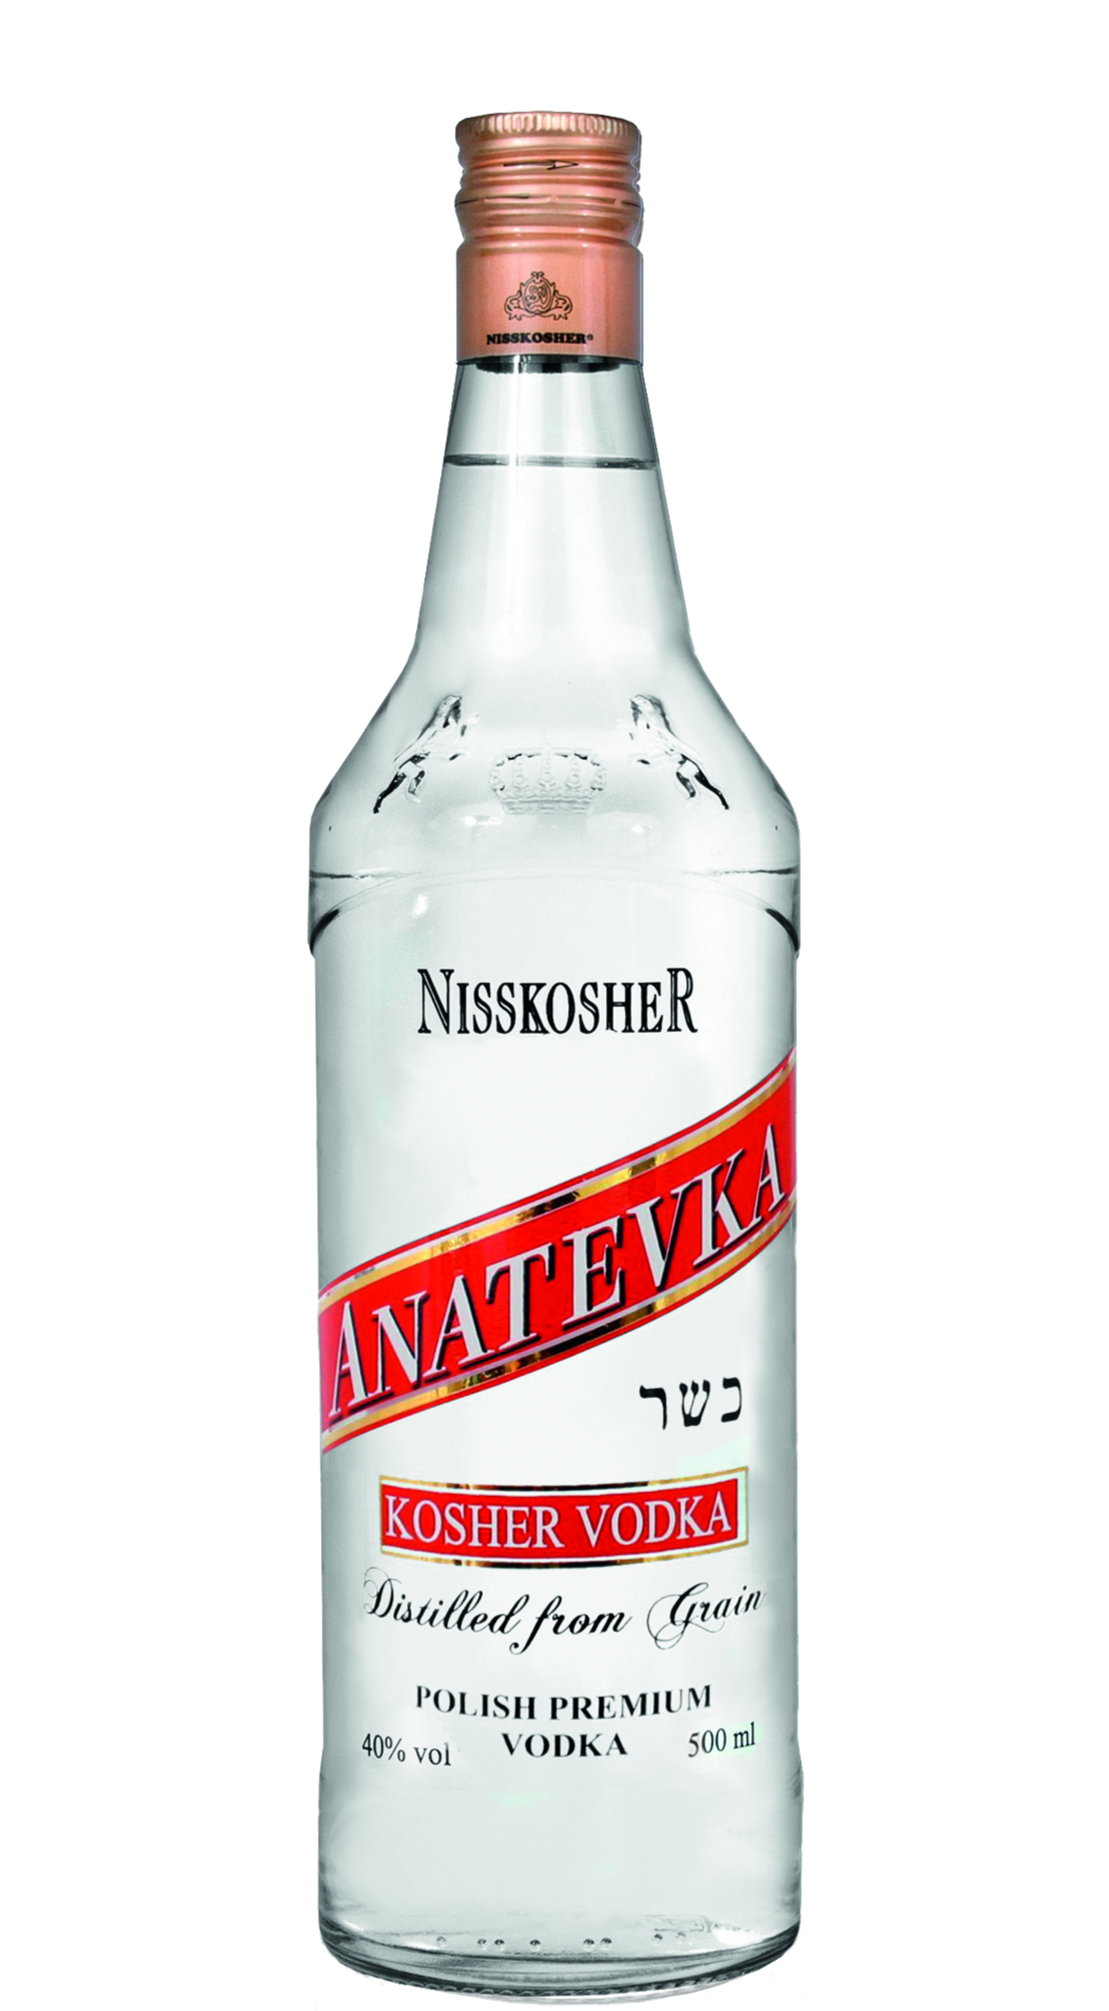 Nisskosher Vodka Anatevka® - 0.7 L / 40% vol.